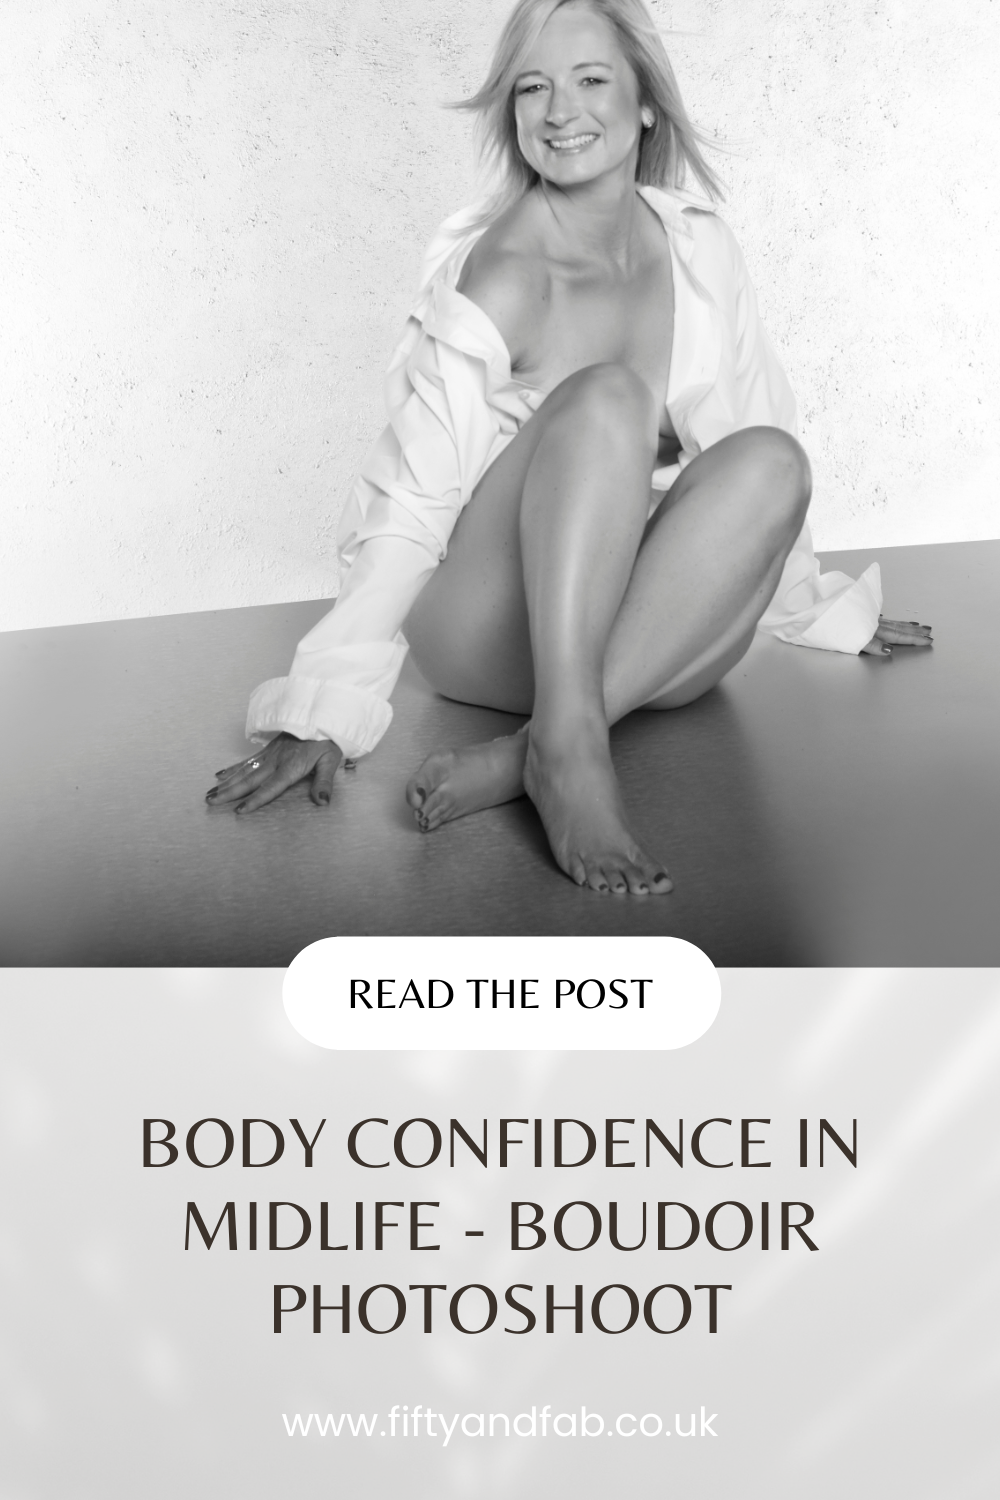 body confidence in midlife - boudoir photo shoot pinterest